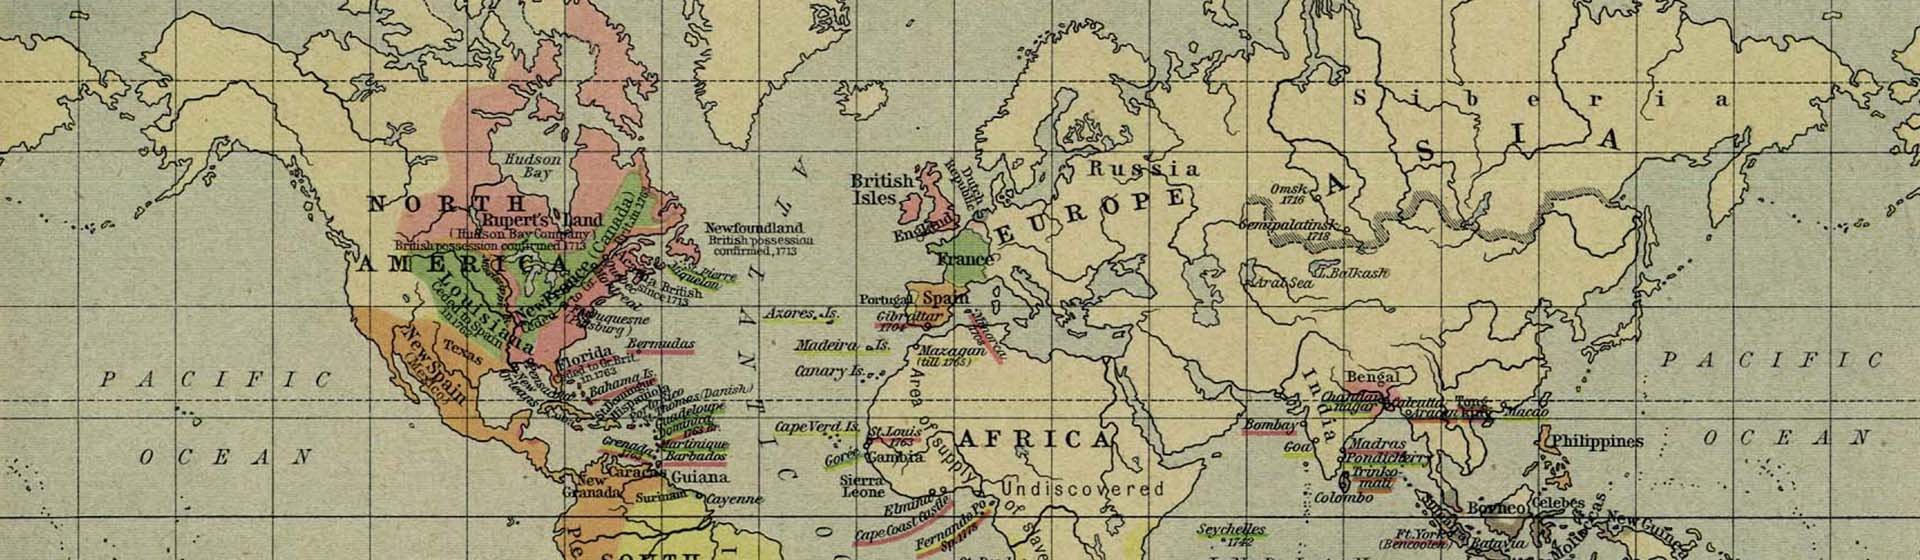 мапа світу 1920